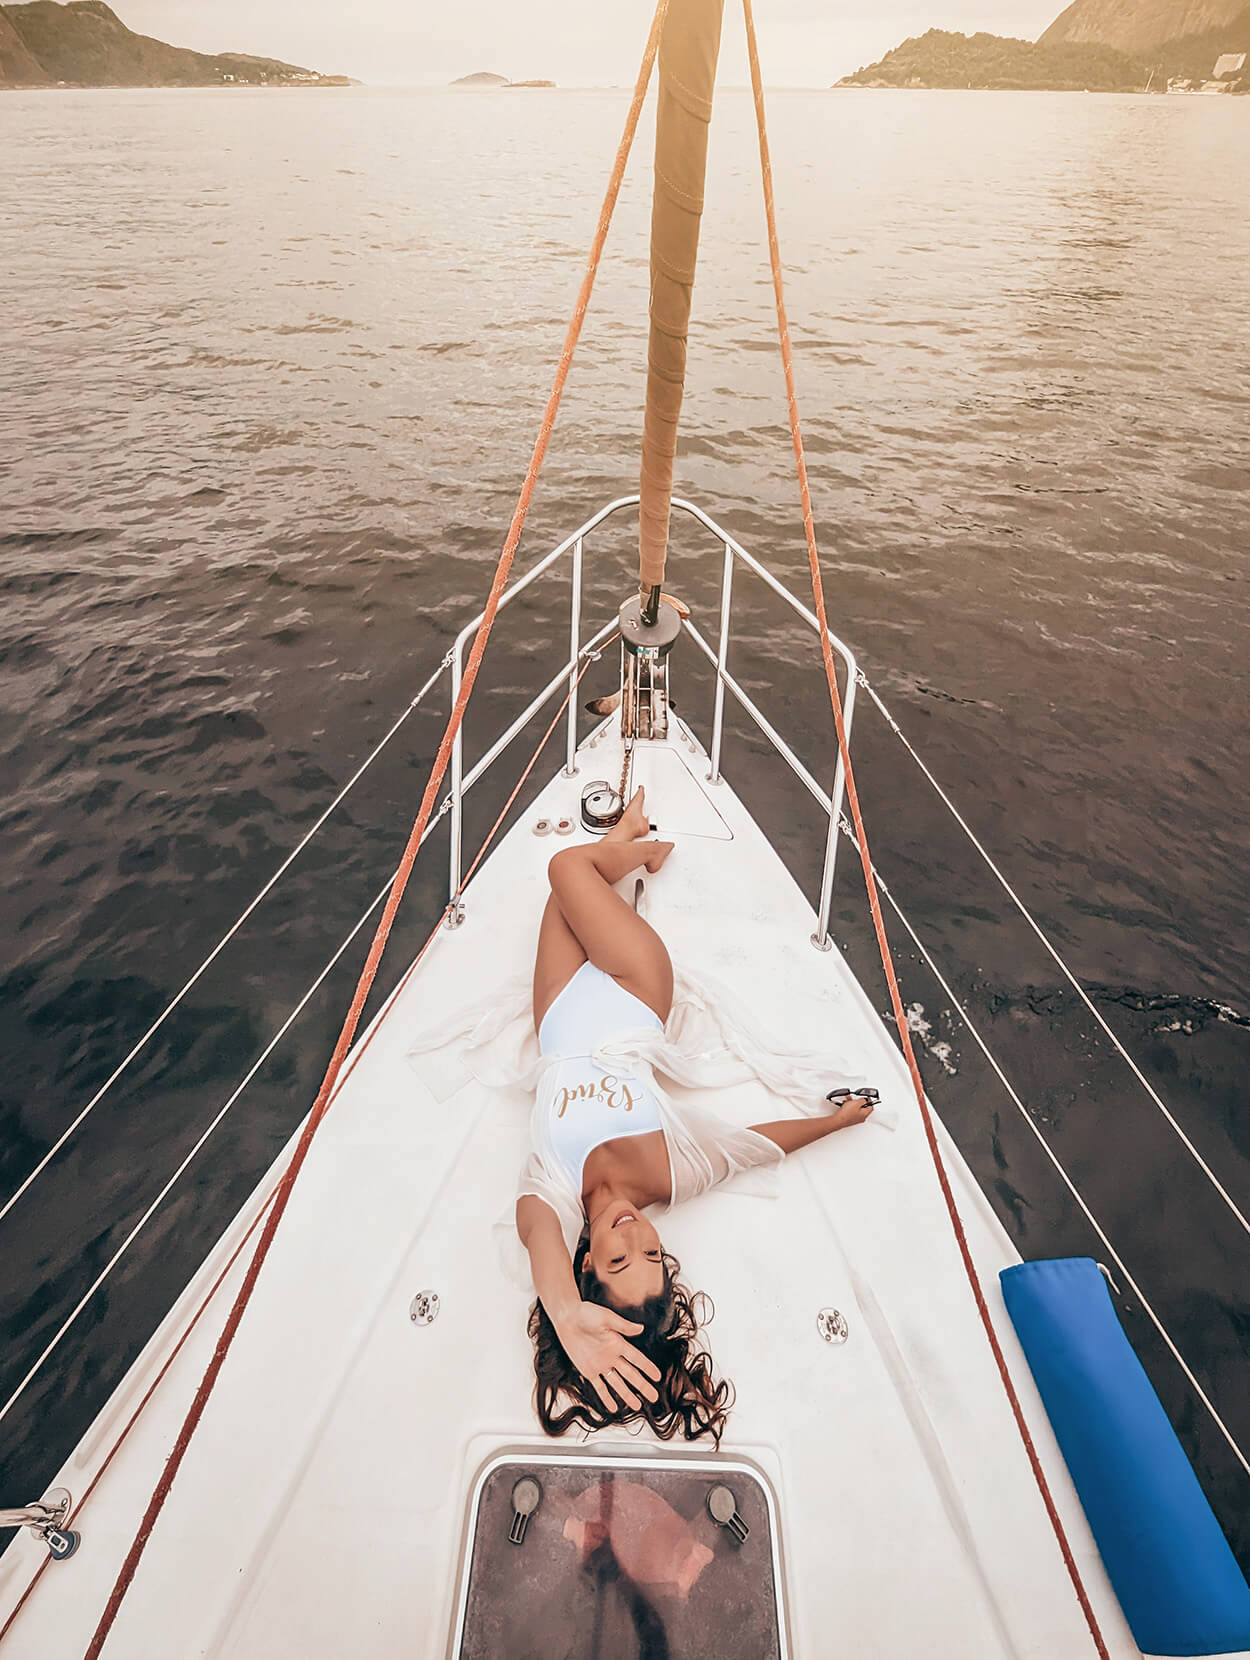 Mulher com maiô branco deitada no veleiro